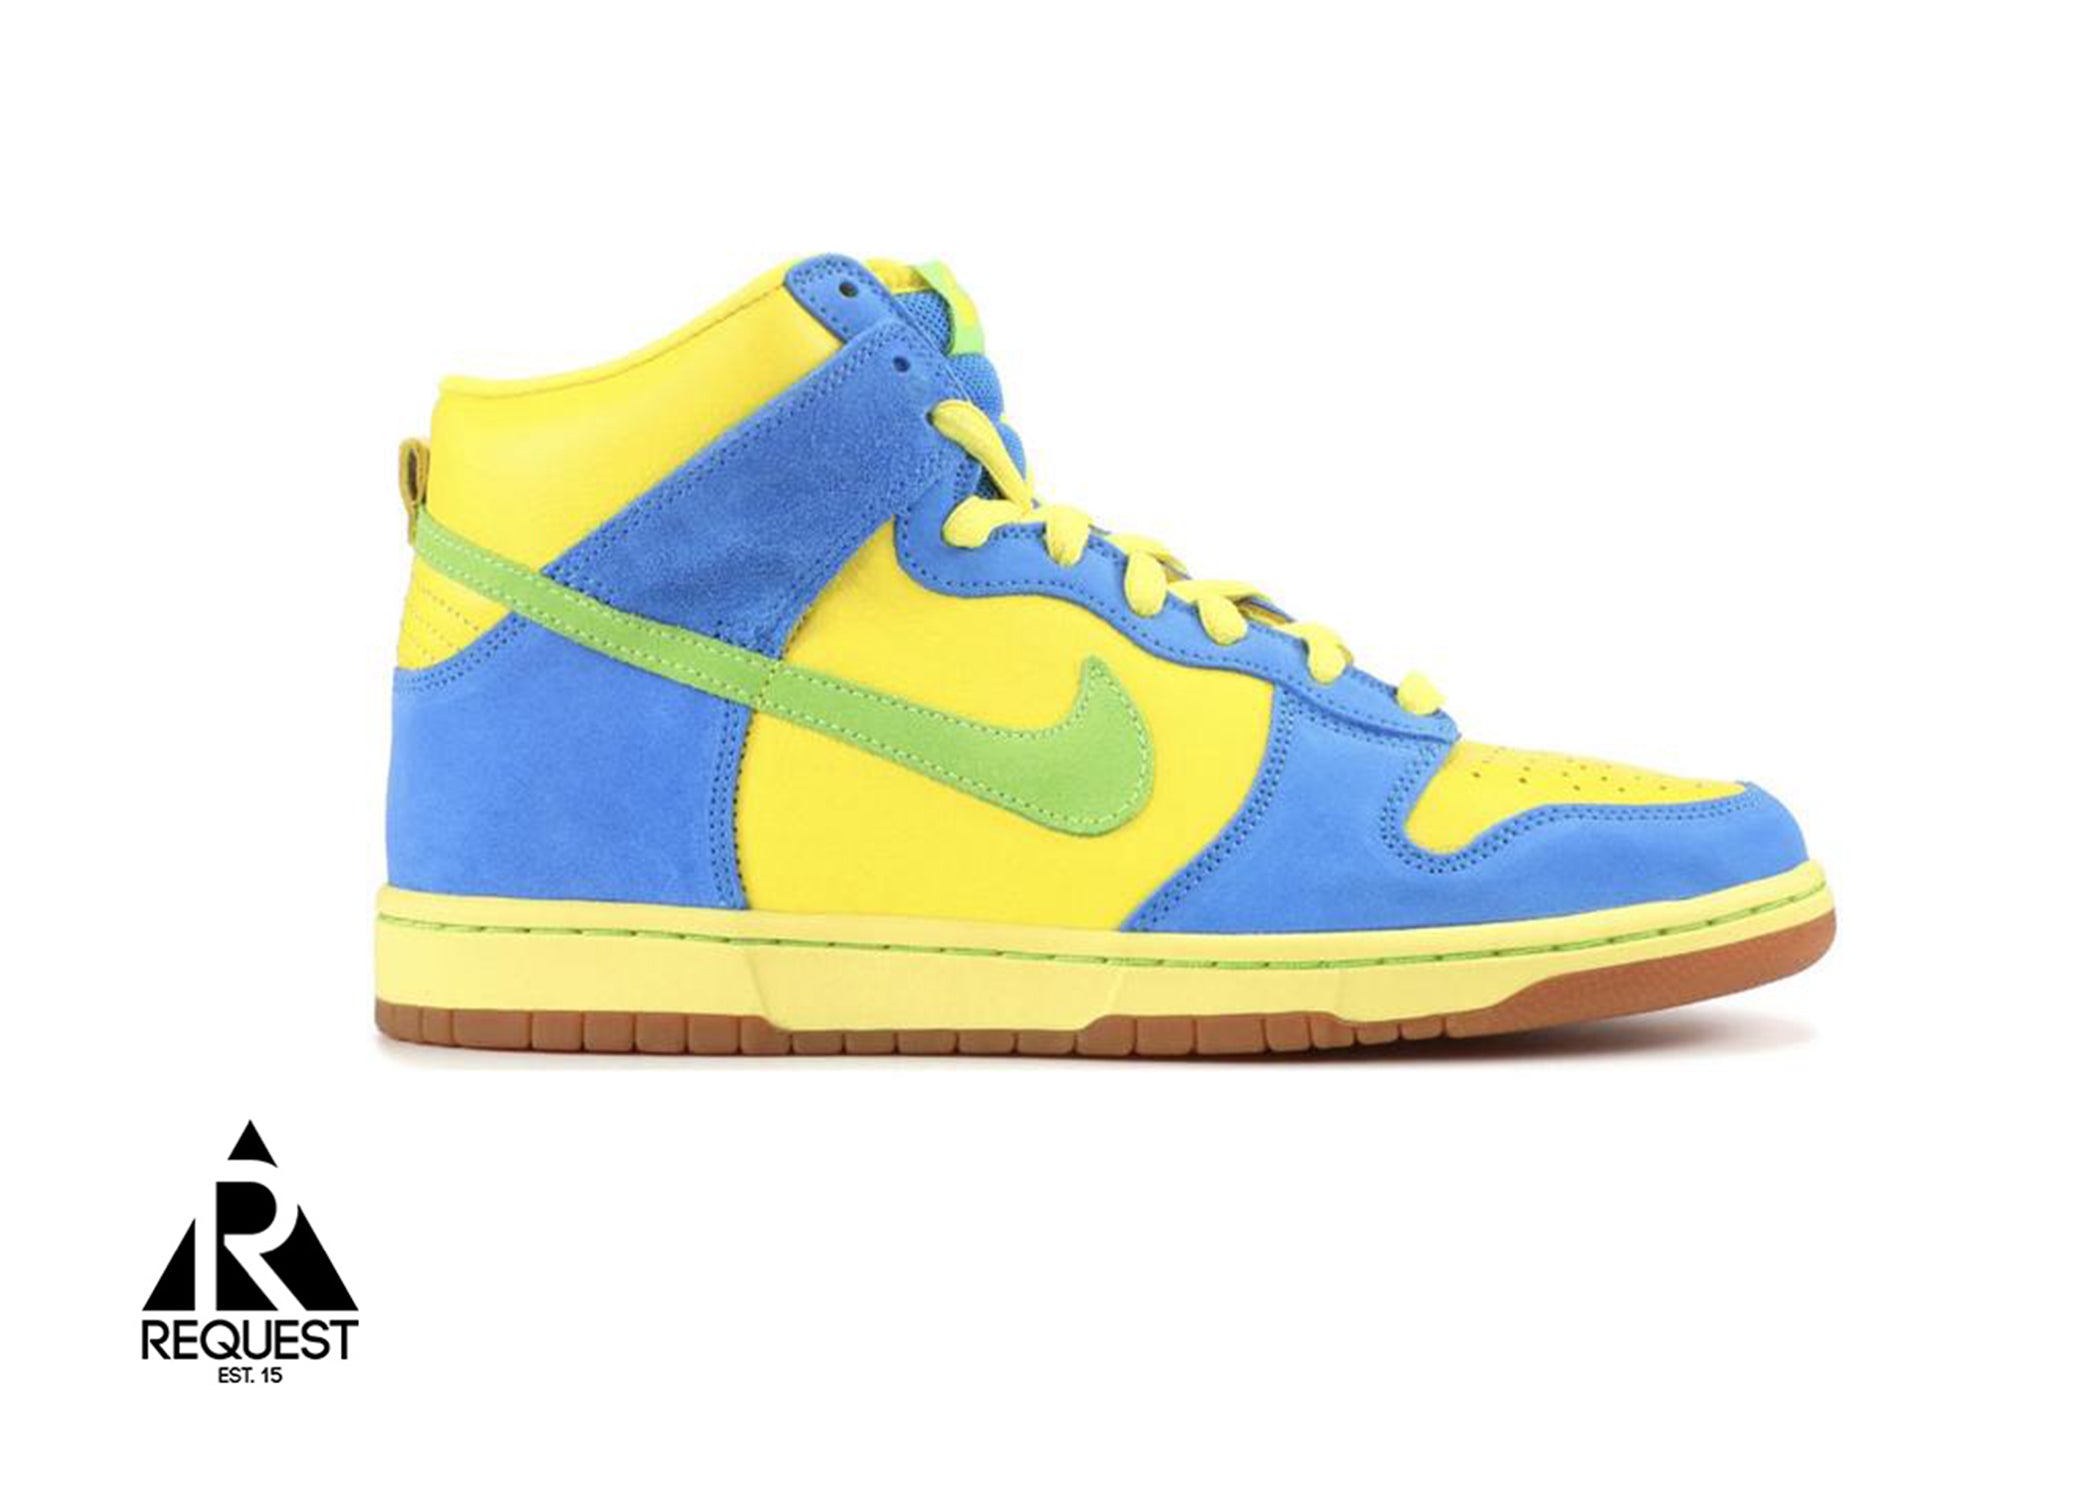 Nike SB Dunk High “Marge”